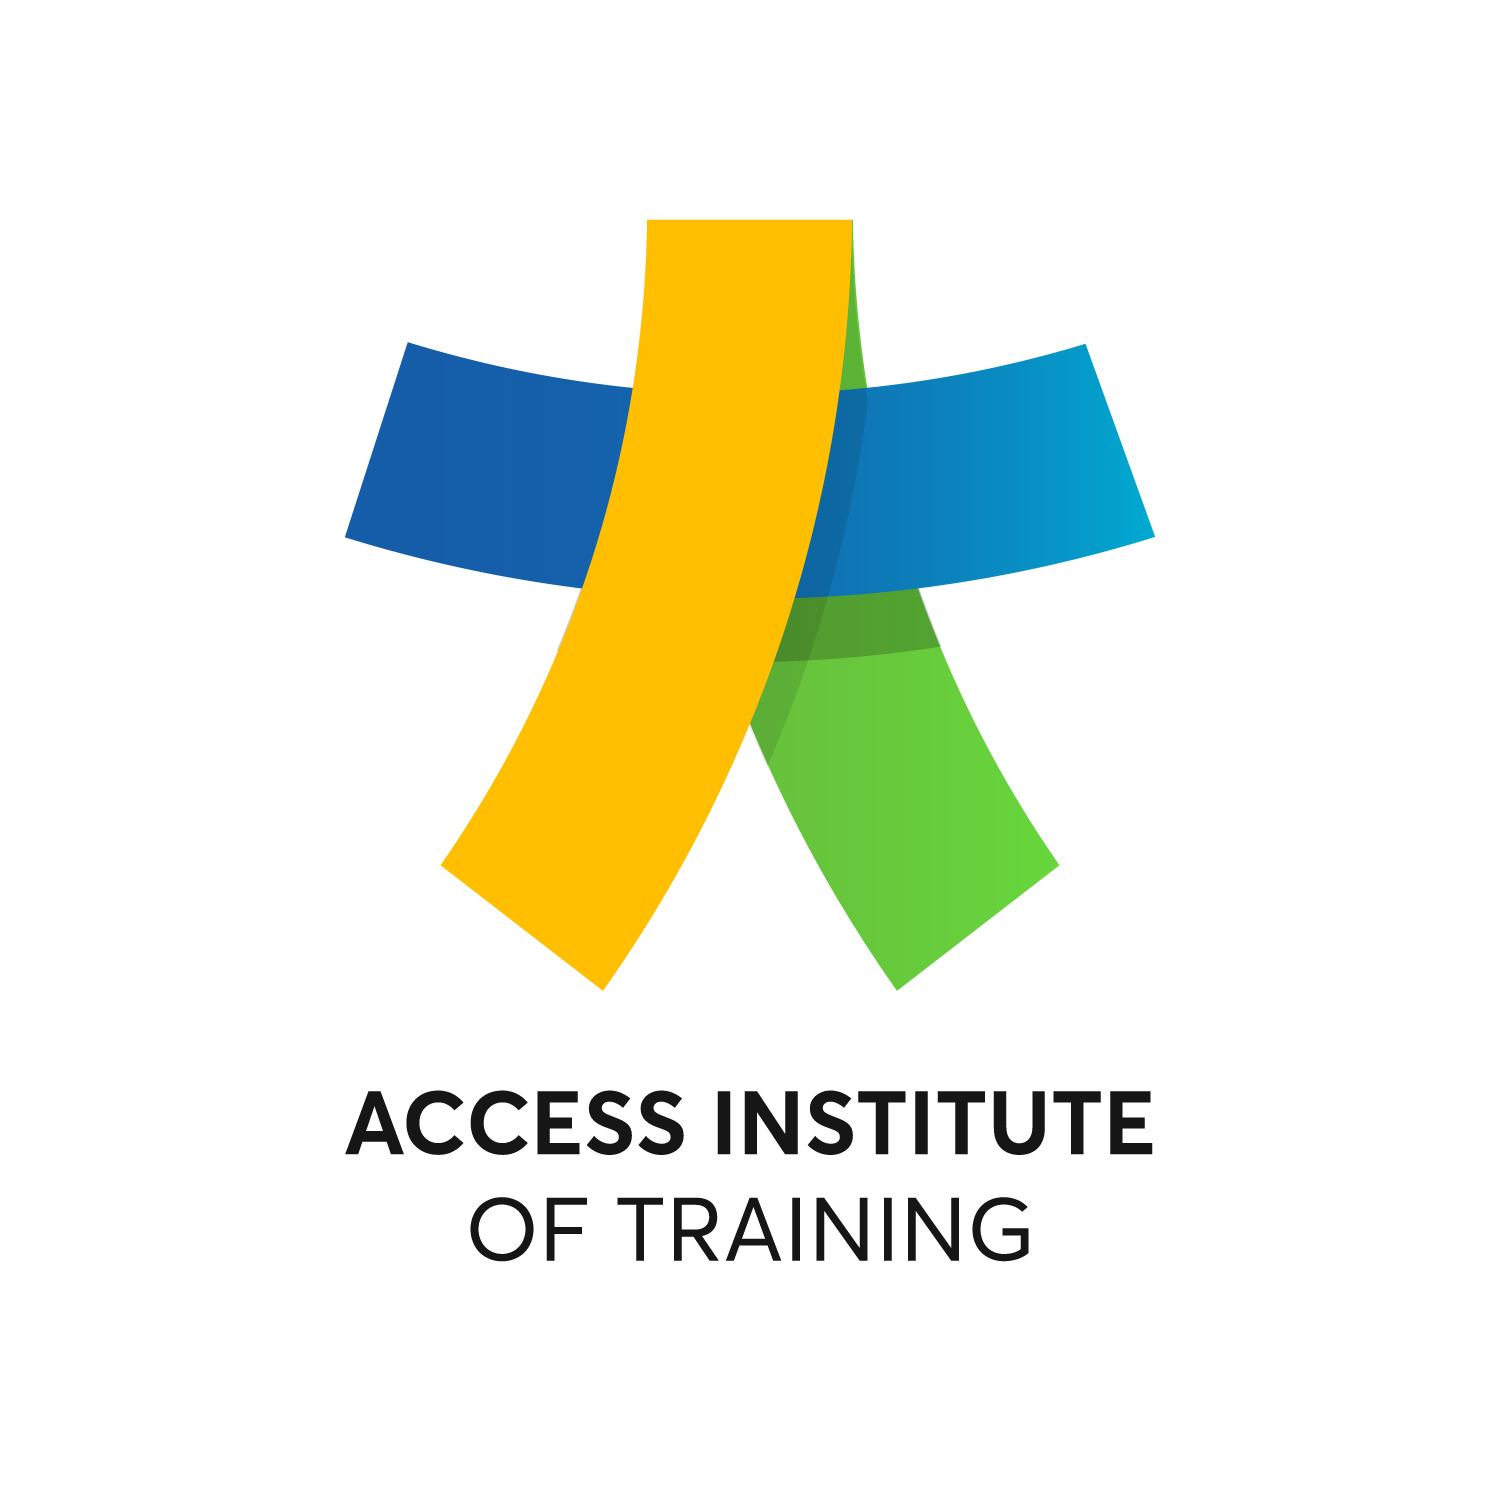 Access Institute of Training